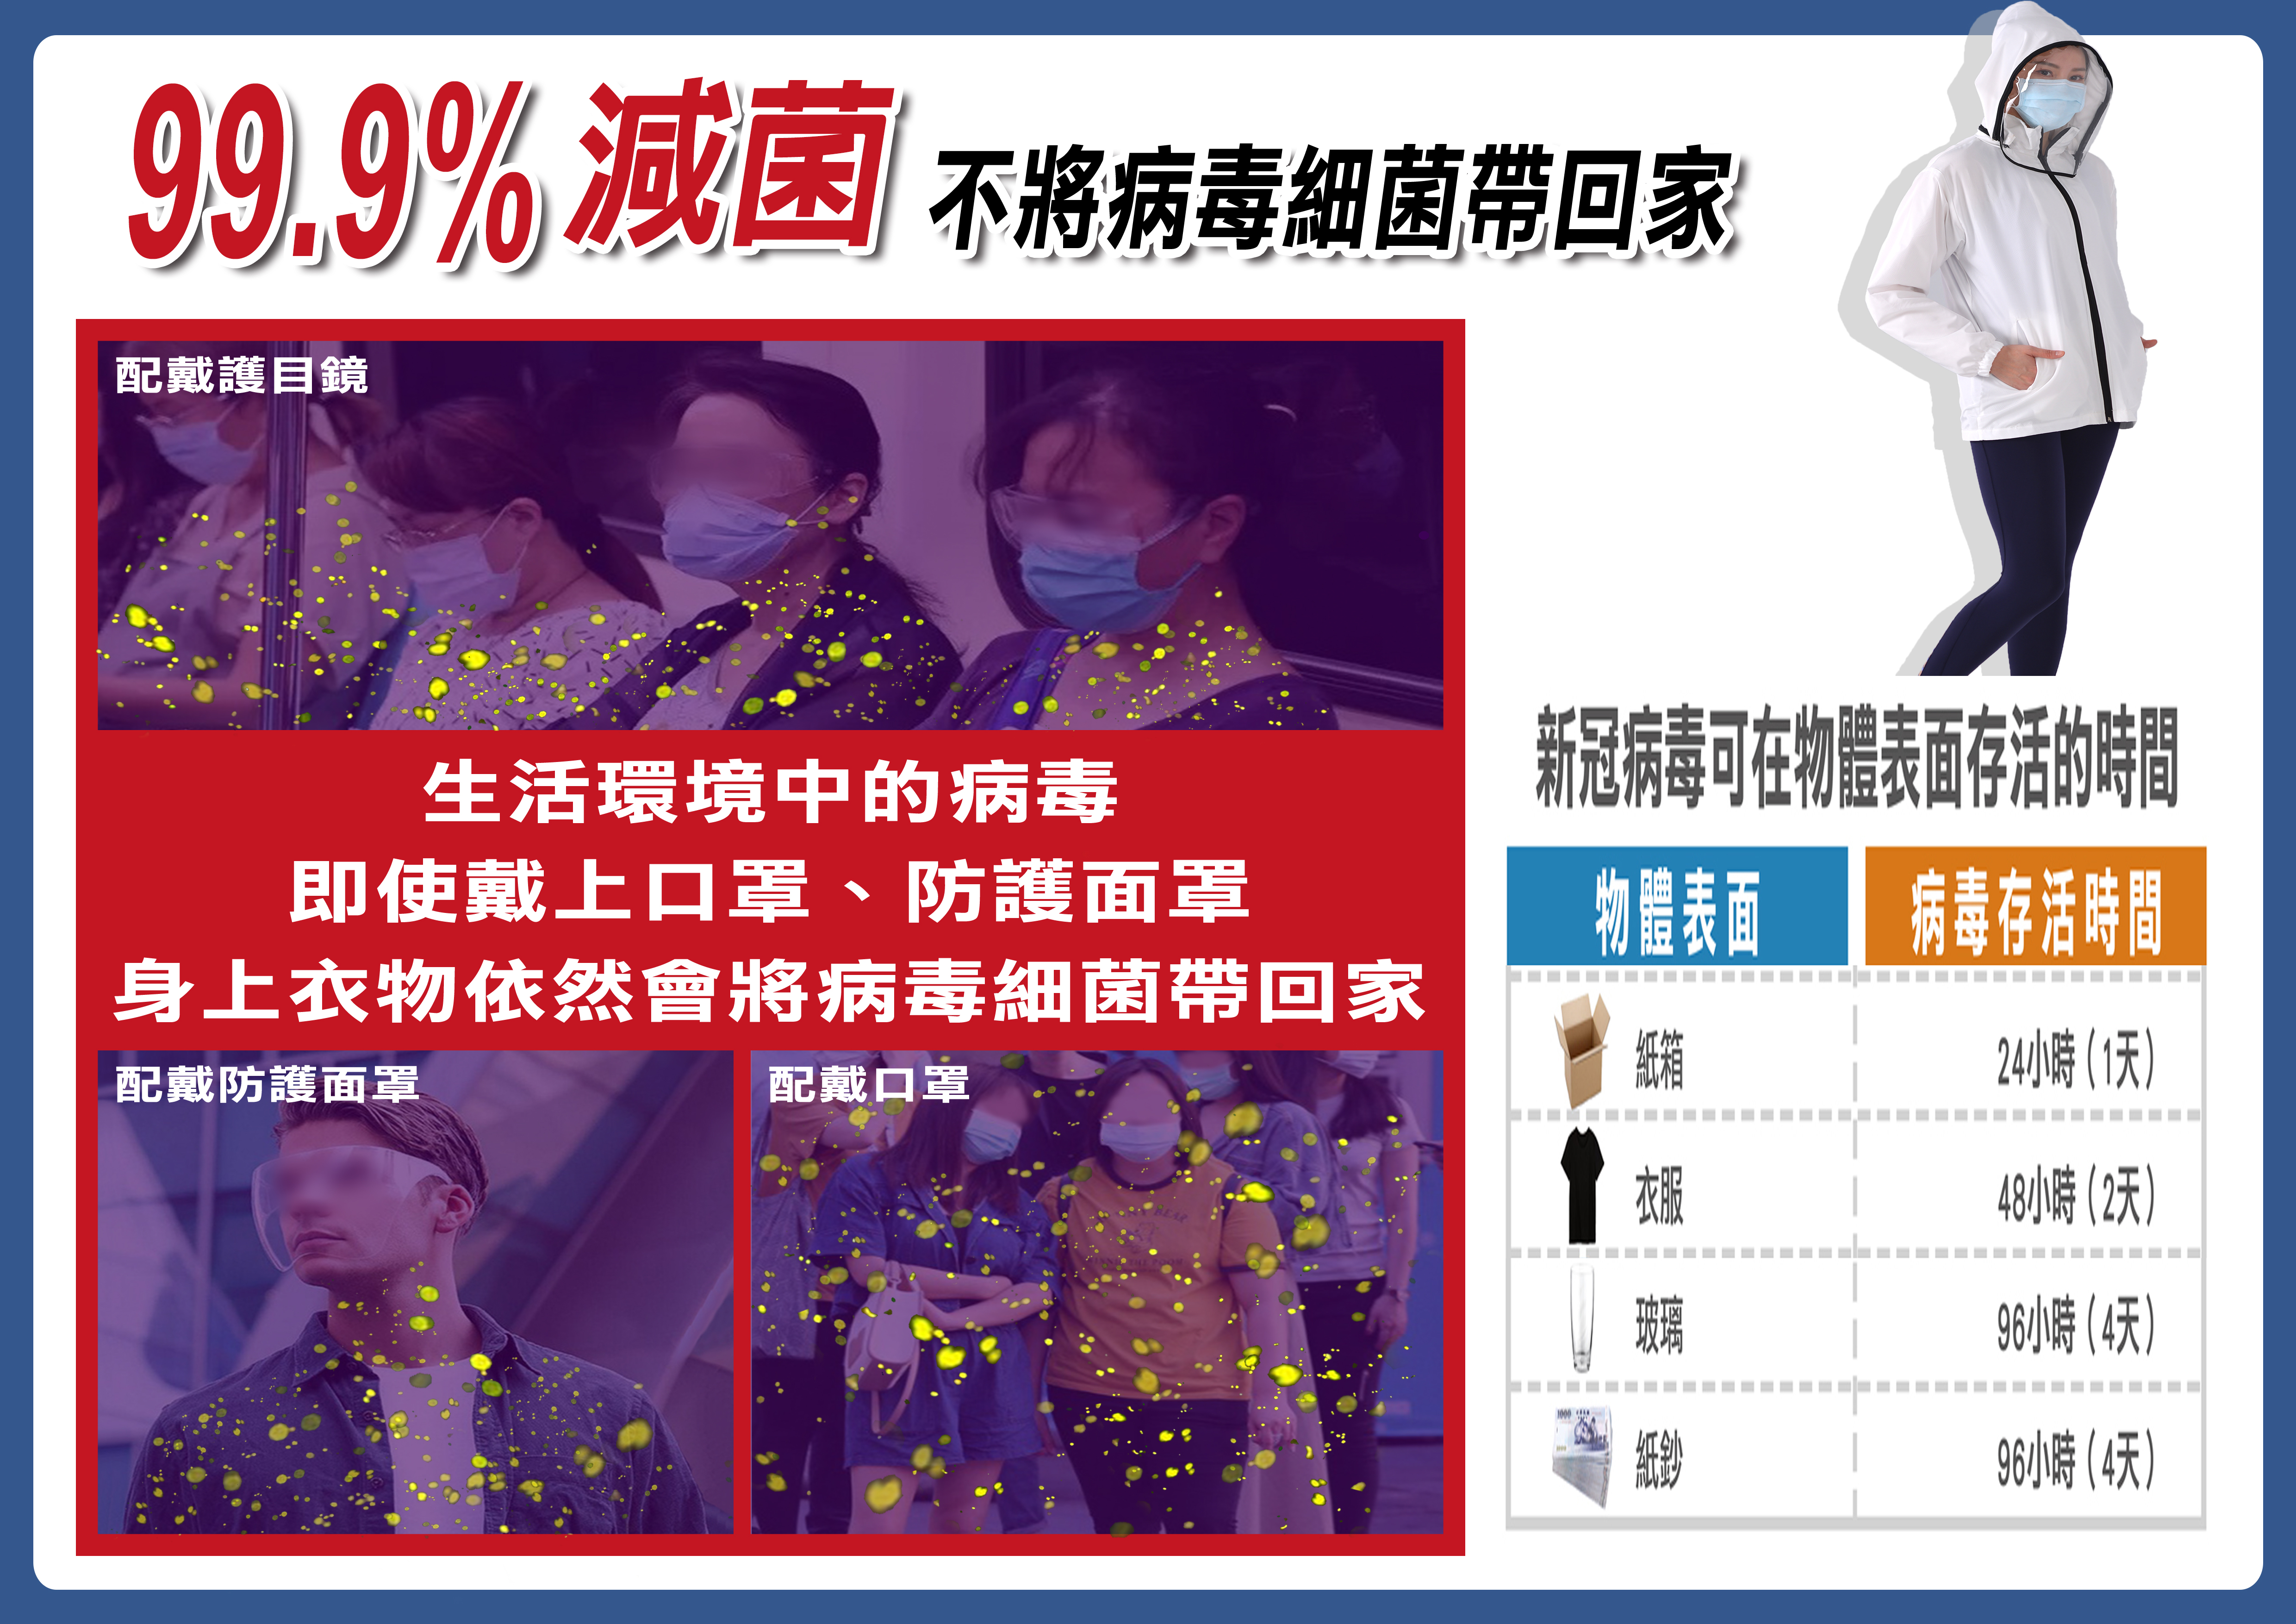       【SK】銀銅鈦極減菌防護衣(台灣製造/減菌率99.9%)